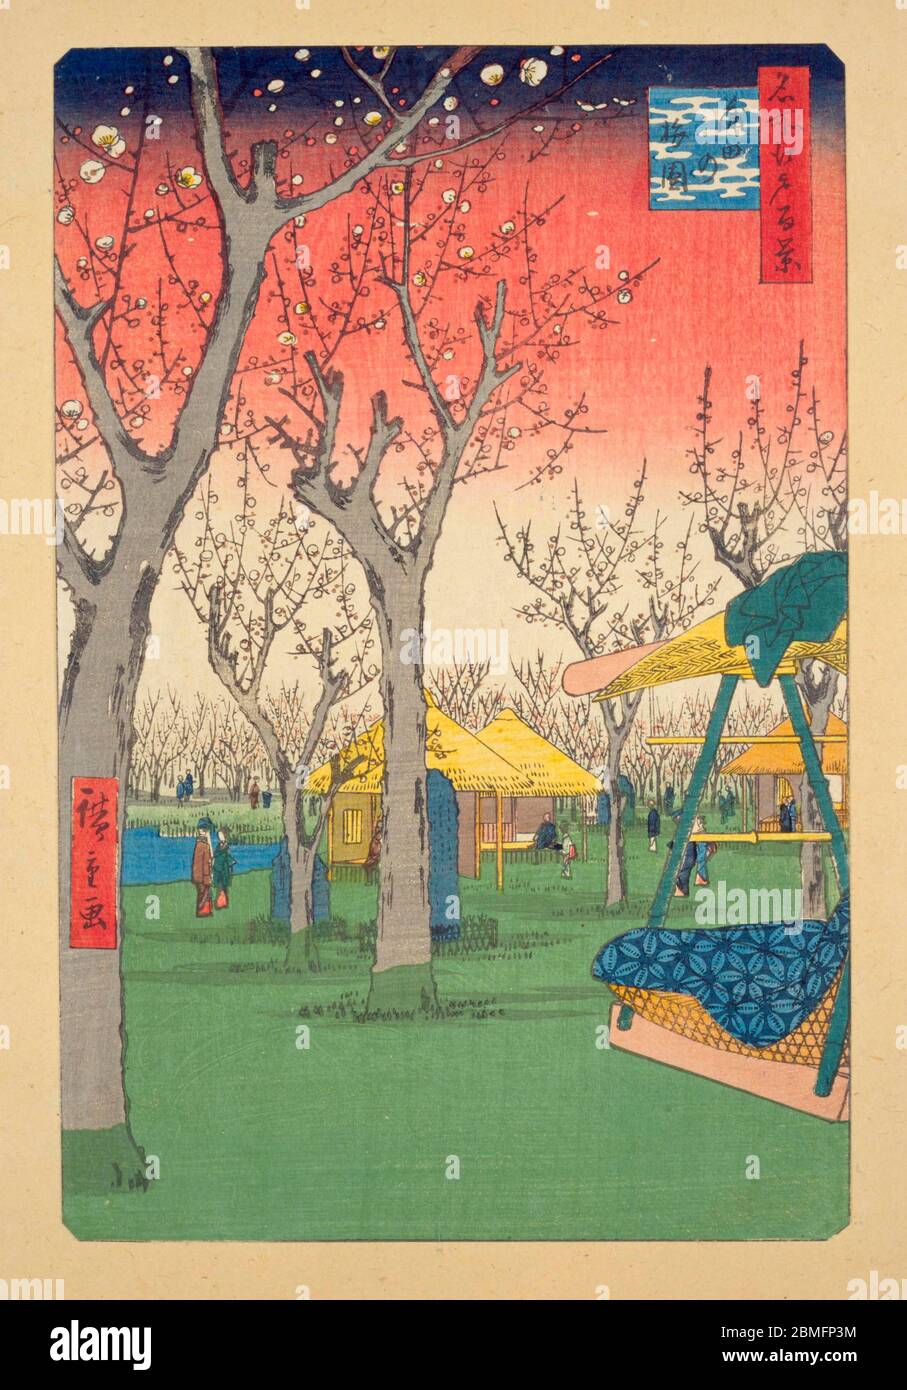 [ 1850er Japan - Japanische Pflaumenblüte ] - Menschen, die Pflaumenblüte in Kamata in der Nähe von Edo (derzeit Tokio), 1857 (Ansei 4) genießen. Dieser Holzschnitt ist Bild 27 in hundert berühmten Ansichten von Edo (名所江戸百景, Meisho Edo Hyakkei), einer Serie von Ukiyoe Künstler Utagawa Hiroshige (歌川広重, 1797–1858) erstellt. Es ist eine von 42 Frühlingsszenen der Serie. Titel: Pflaumengarten in Kamada (蒲田の梅園, Kamada no umezono) Vintage Ukiyoe Holzschnitt aus dem 19. Jahrhundert. Stockfoto